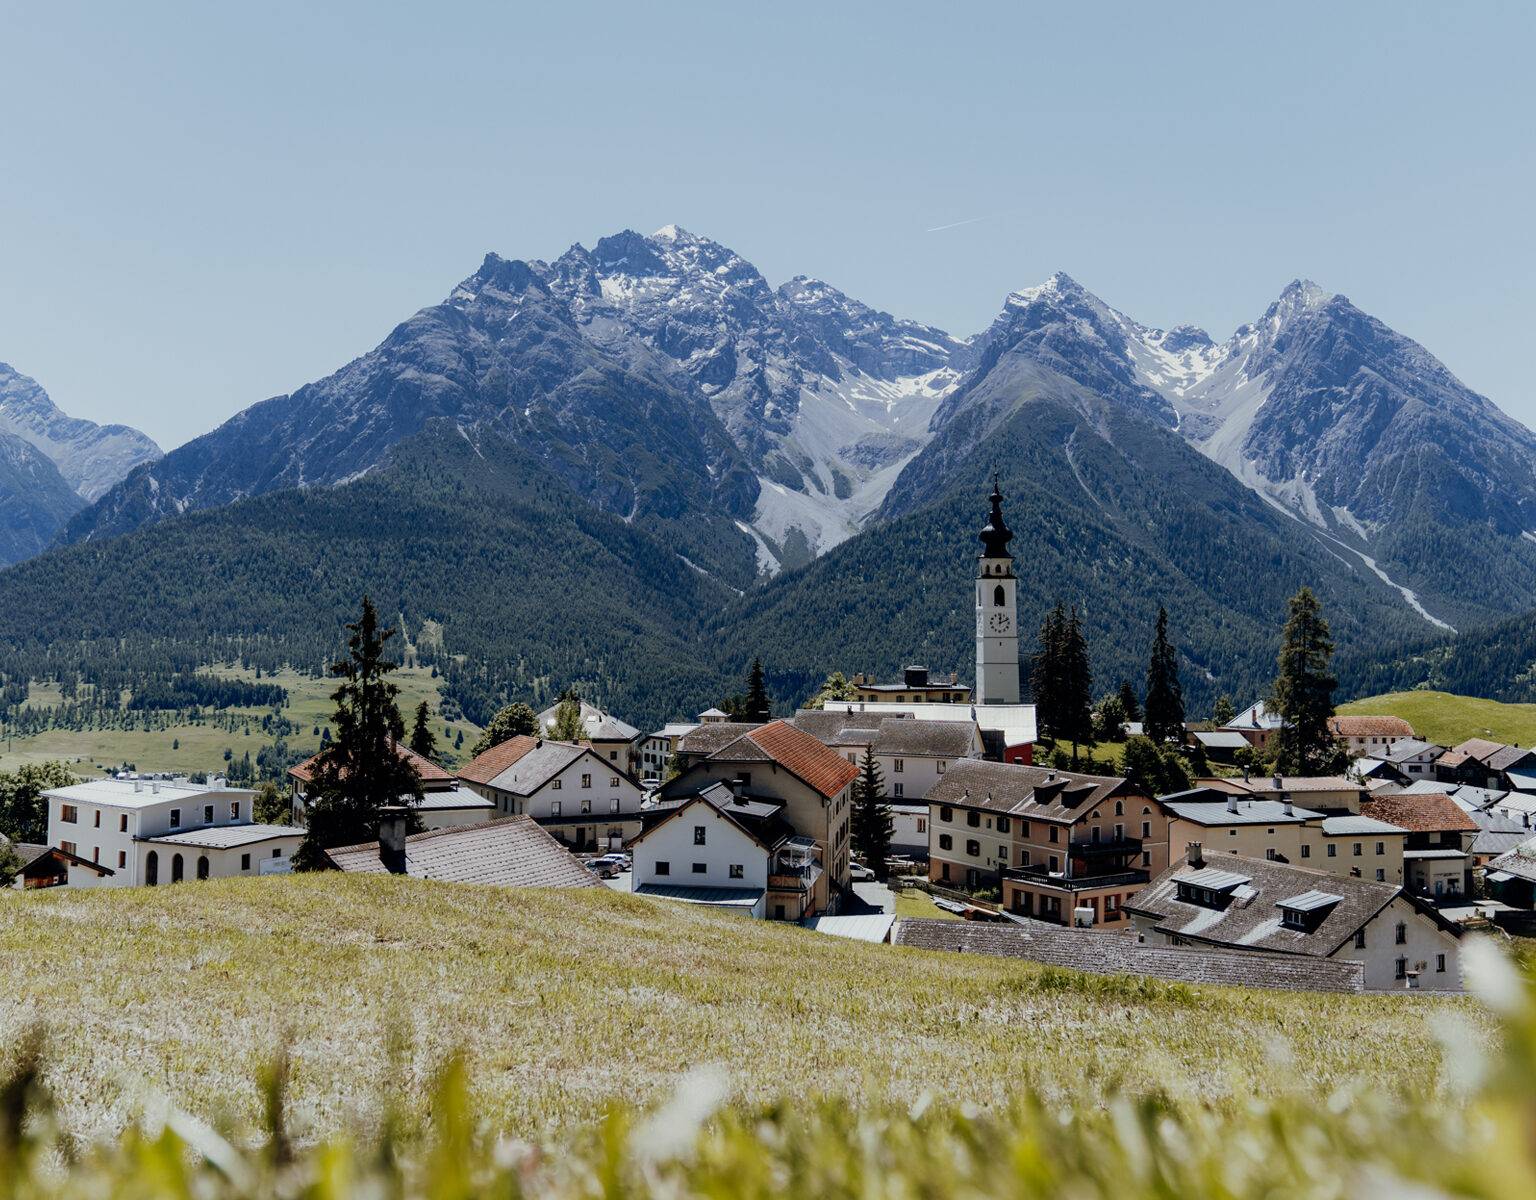 Blick über eine Wiese hinein in ein Dorf mit Kirchturmspitze, dahinter Bergpanorama, in Ftan in der Schweiz.